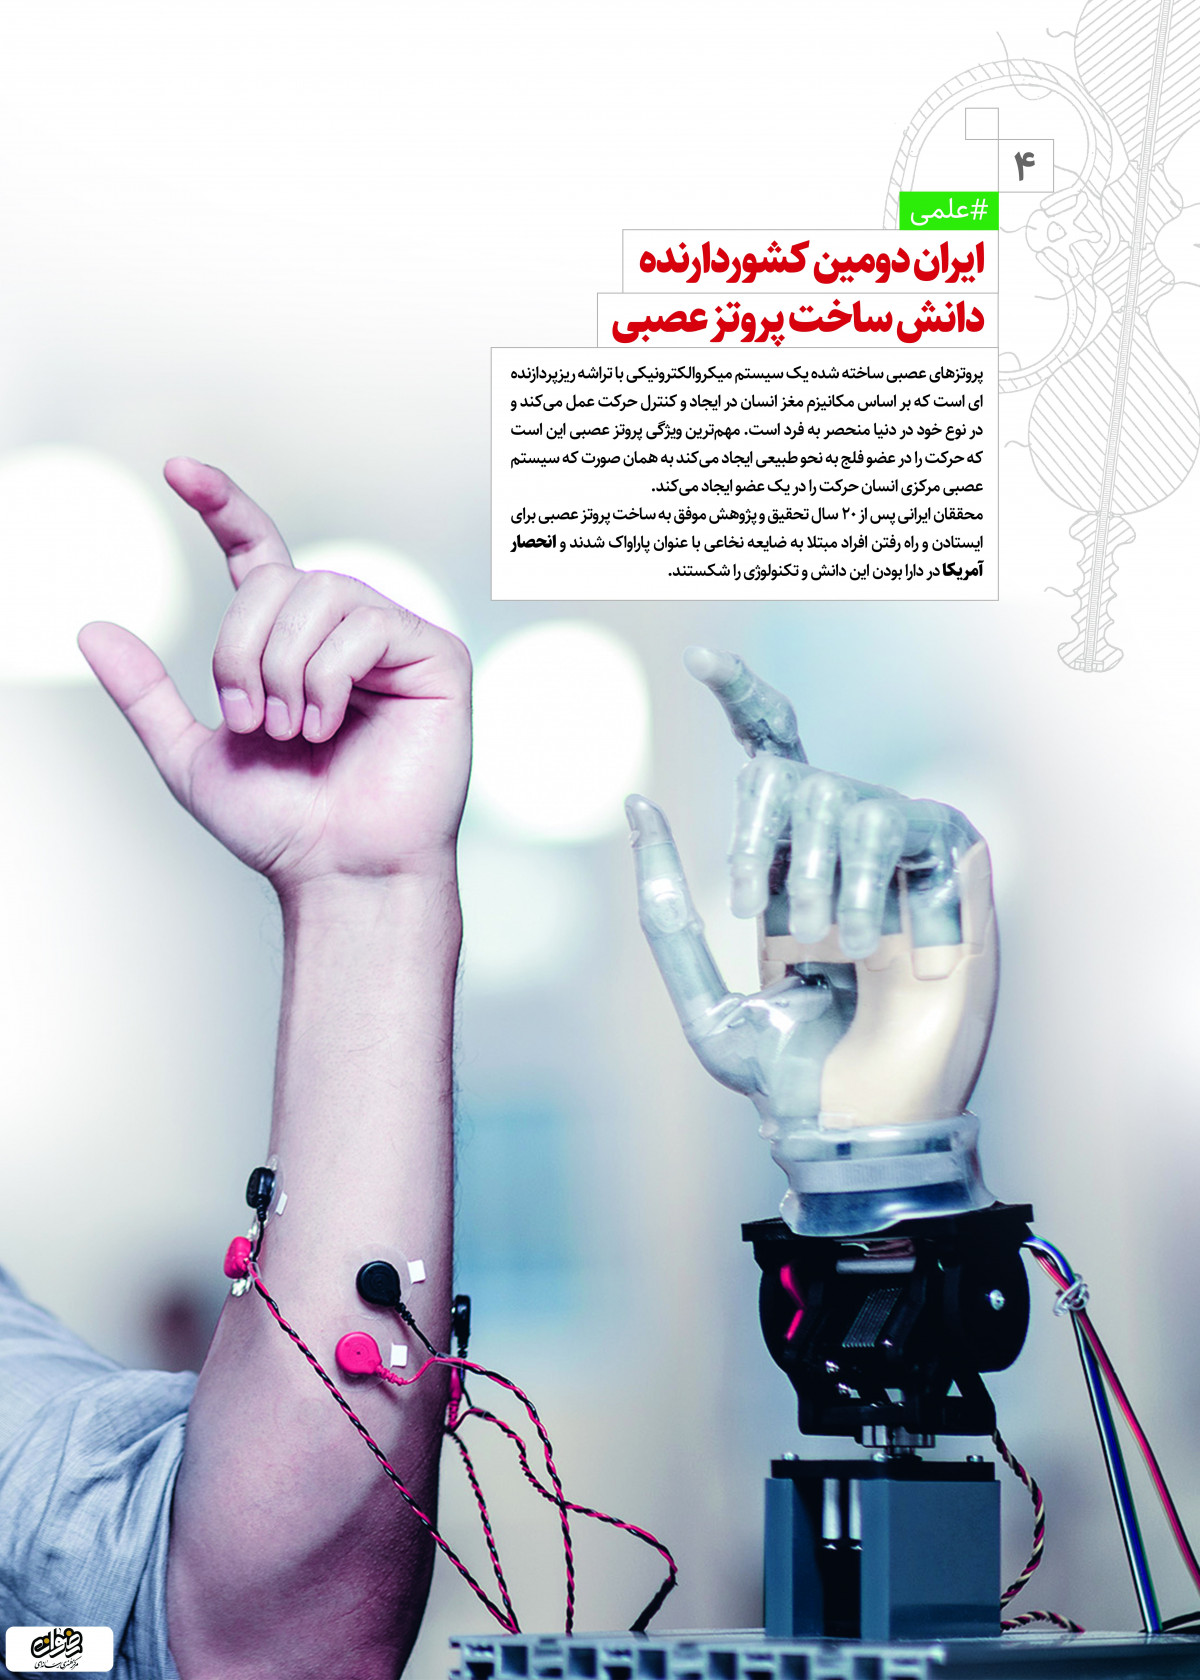 پوستر: دستاوردهای انقلاب اسلامی ایران دومین کشور دارنده دانش ساخت پروتز عصبی